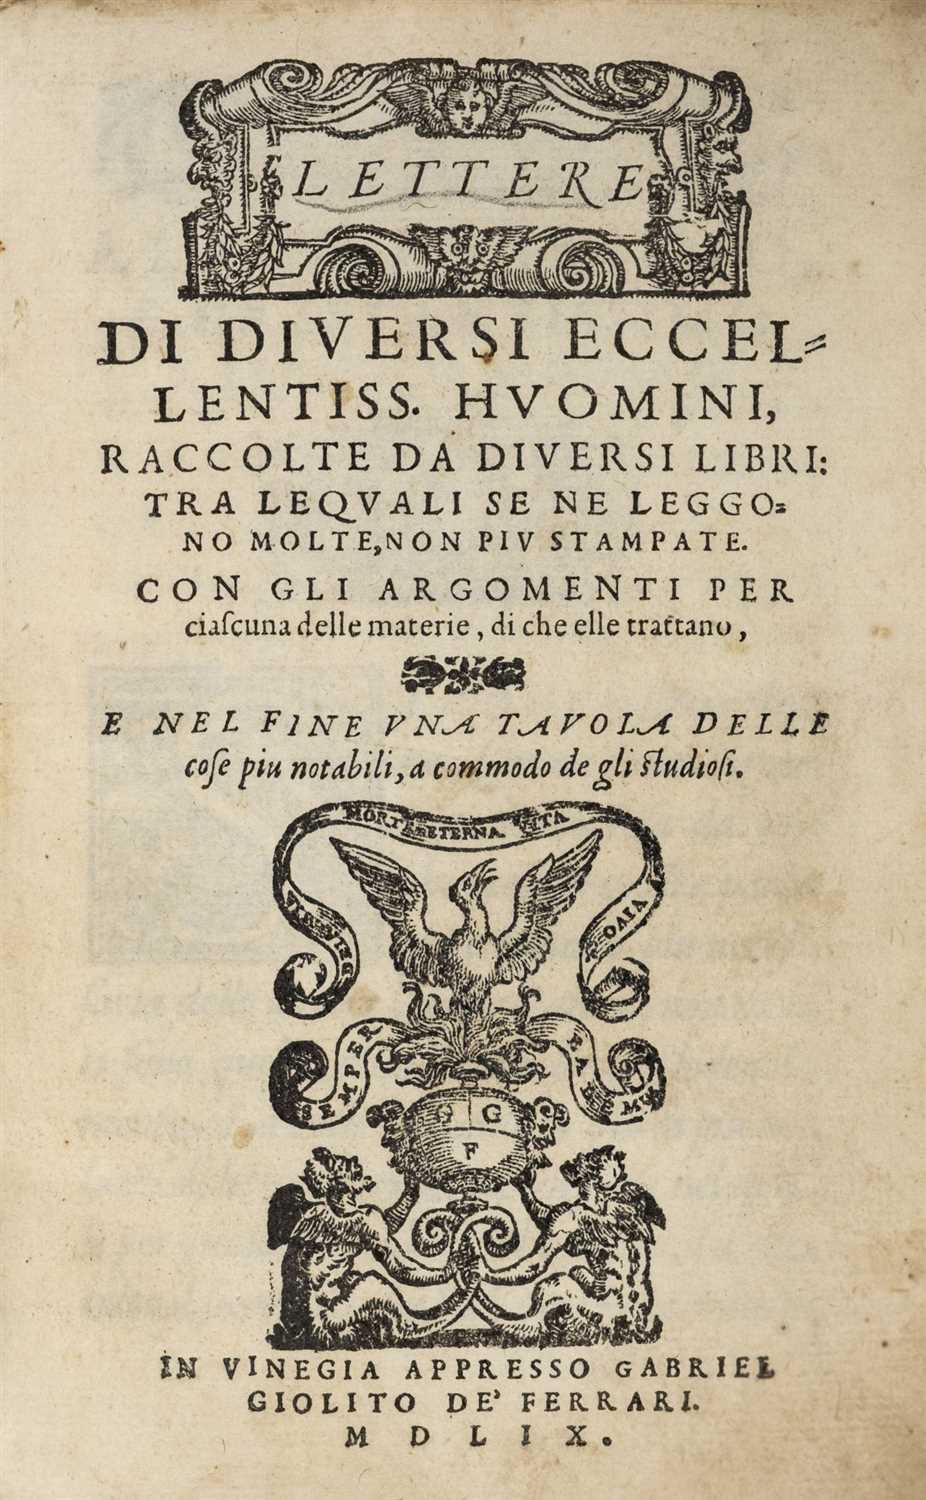 Lot 304 - Dolce (Lodovico). Lettere di Diversi Eccellentiss Huomini Raccolte da Diversi Libri, Venice, 1559